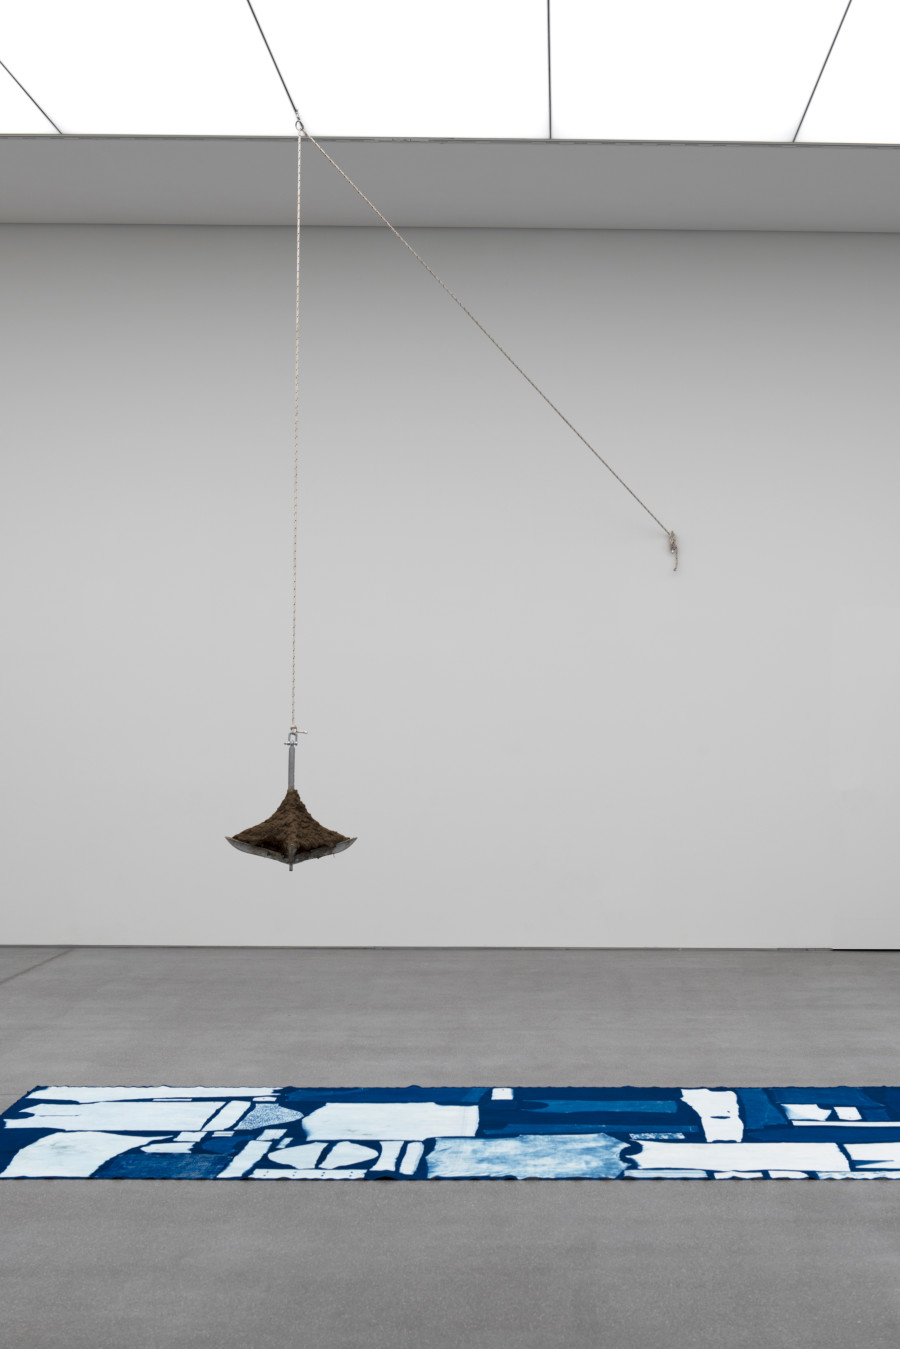 Jahresausstellung 2022 mit Werken von Andrea Francesco Todisco (oben), Silvie Noemi Demont (unten)